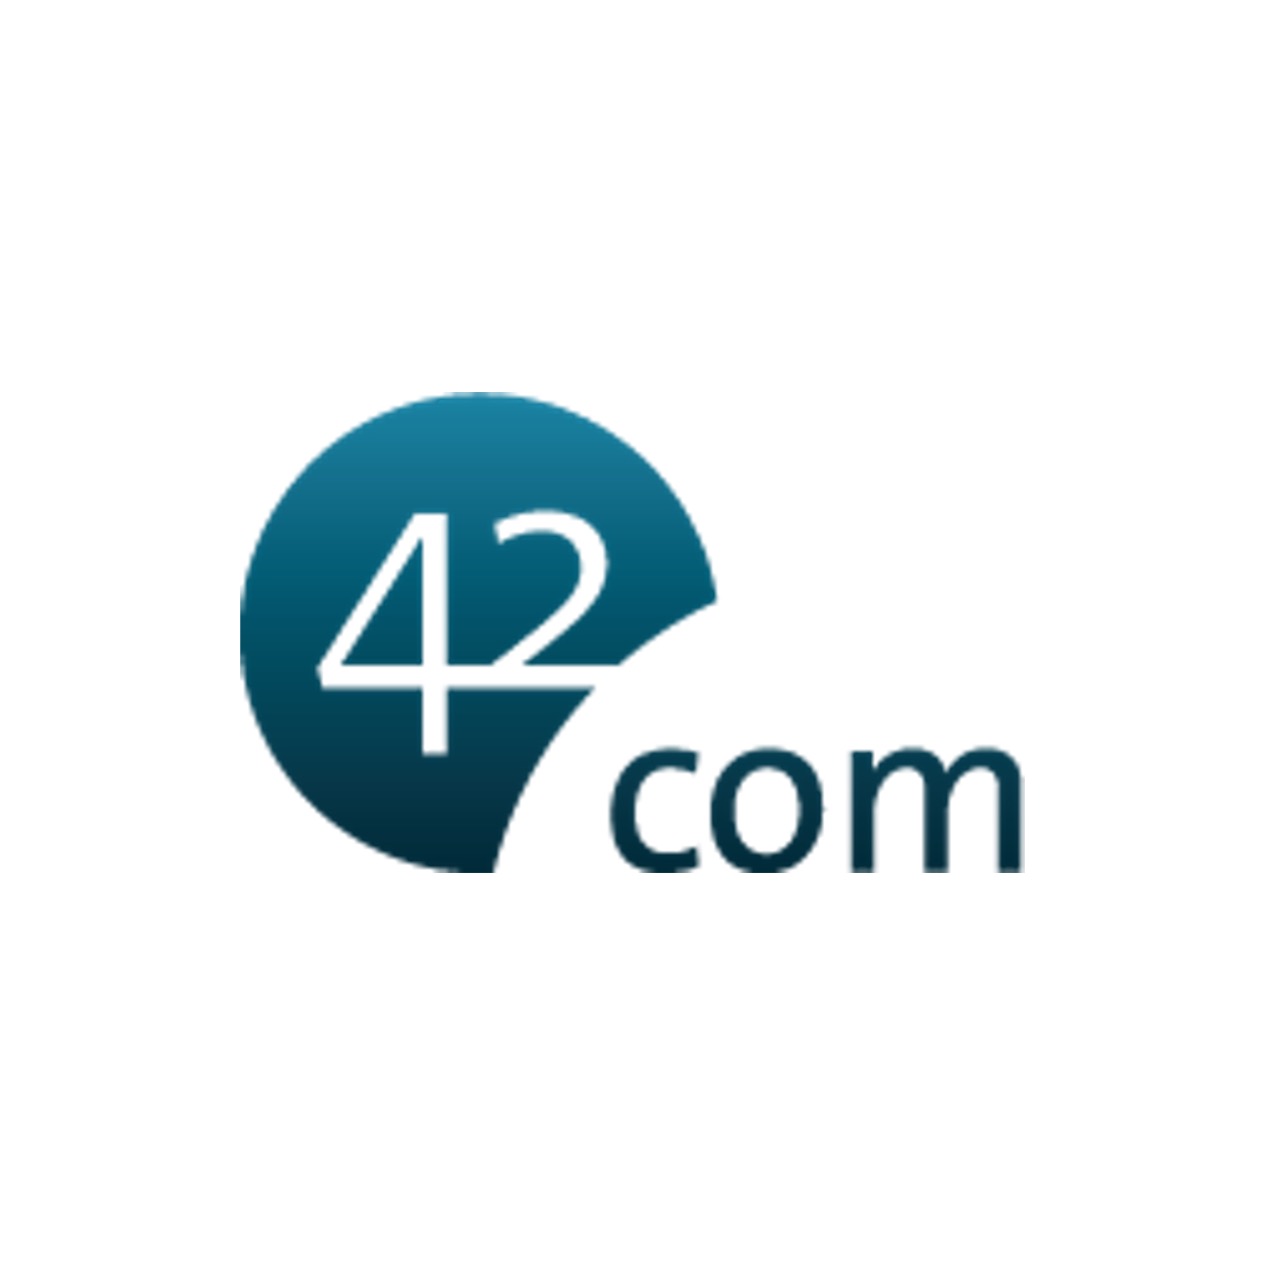 42.com Logo